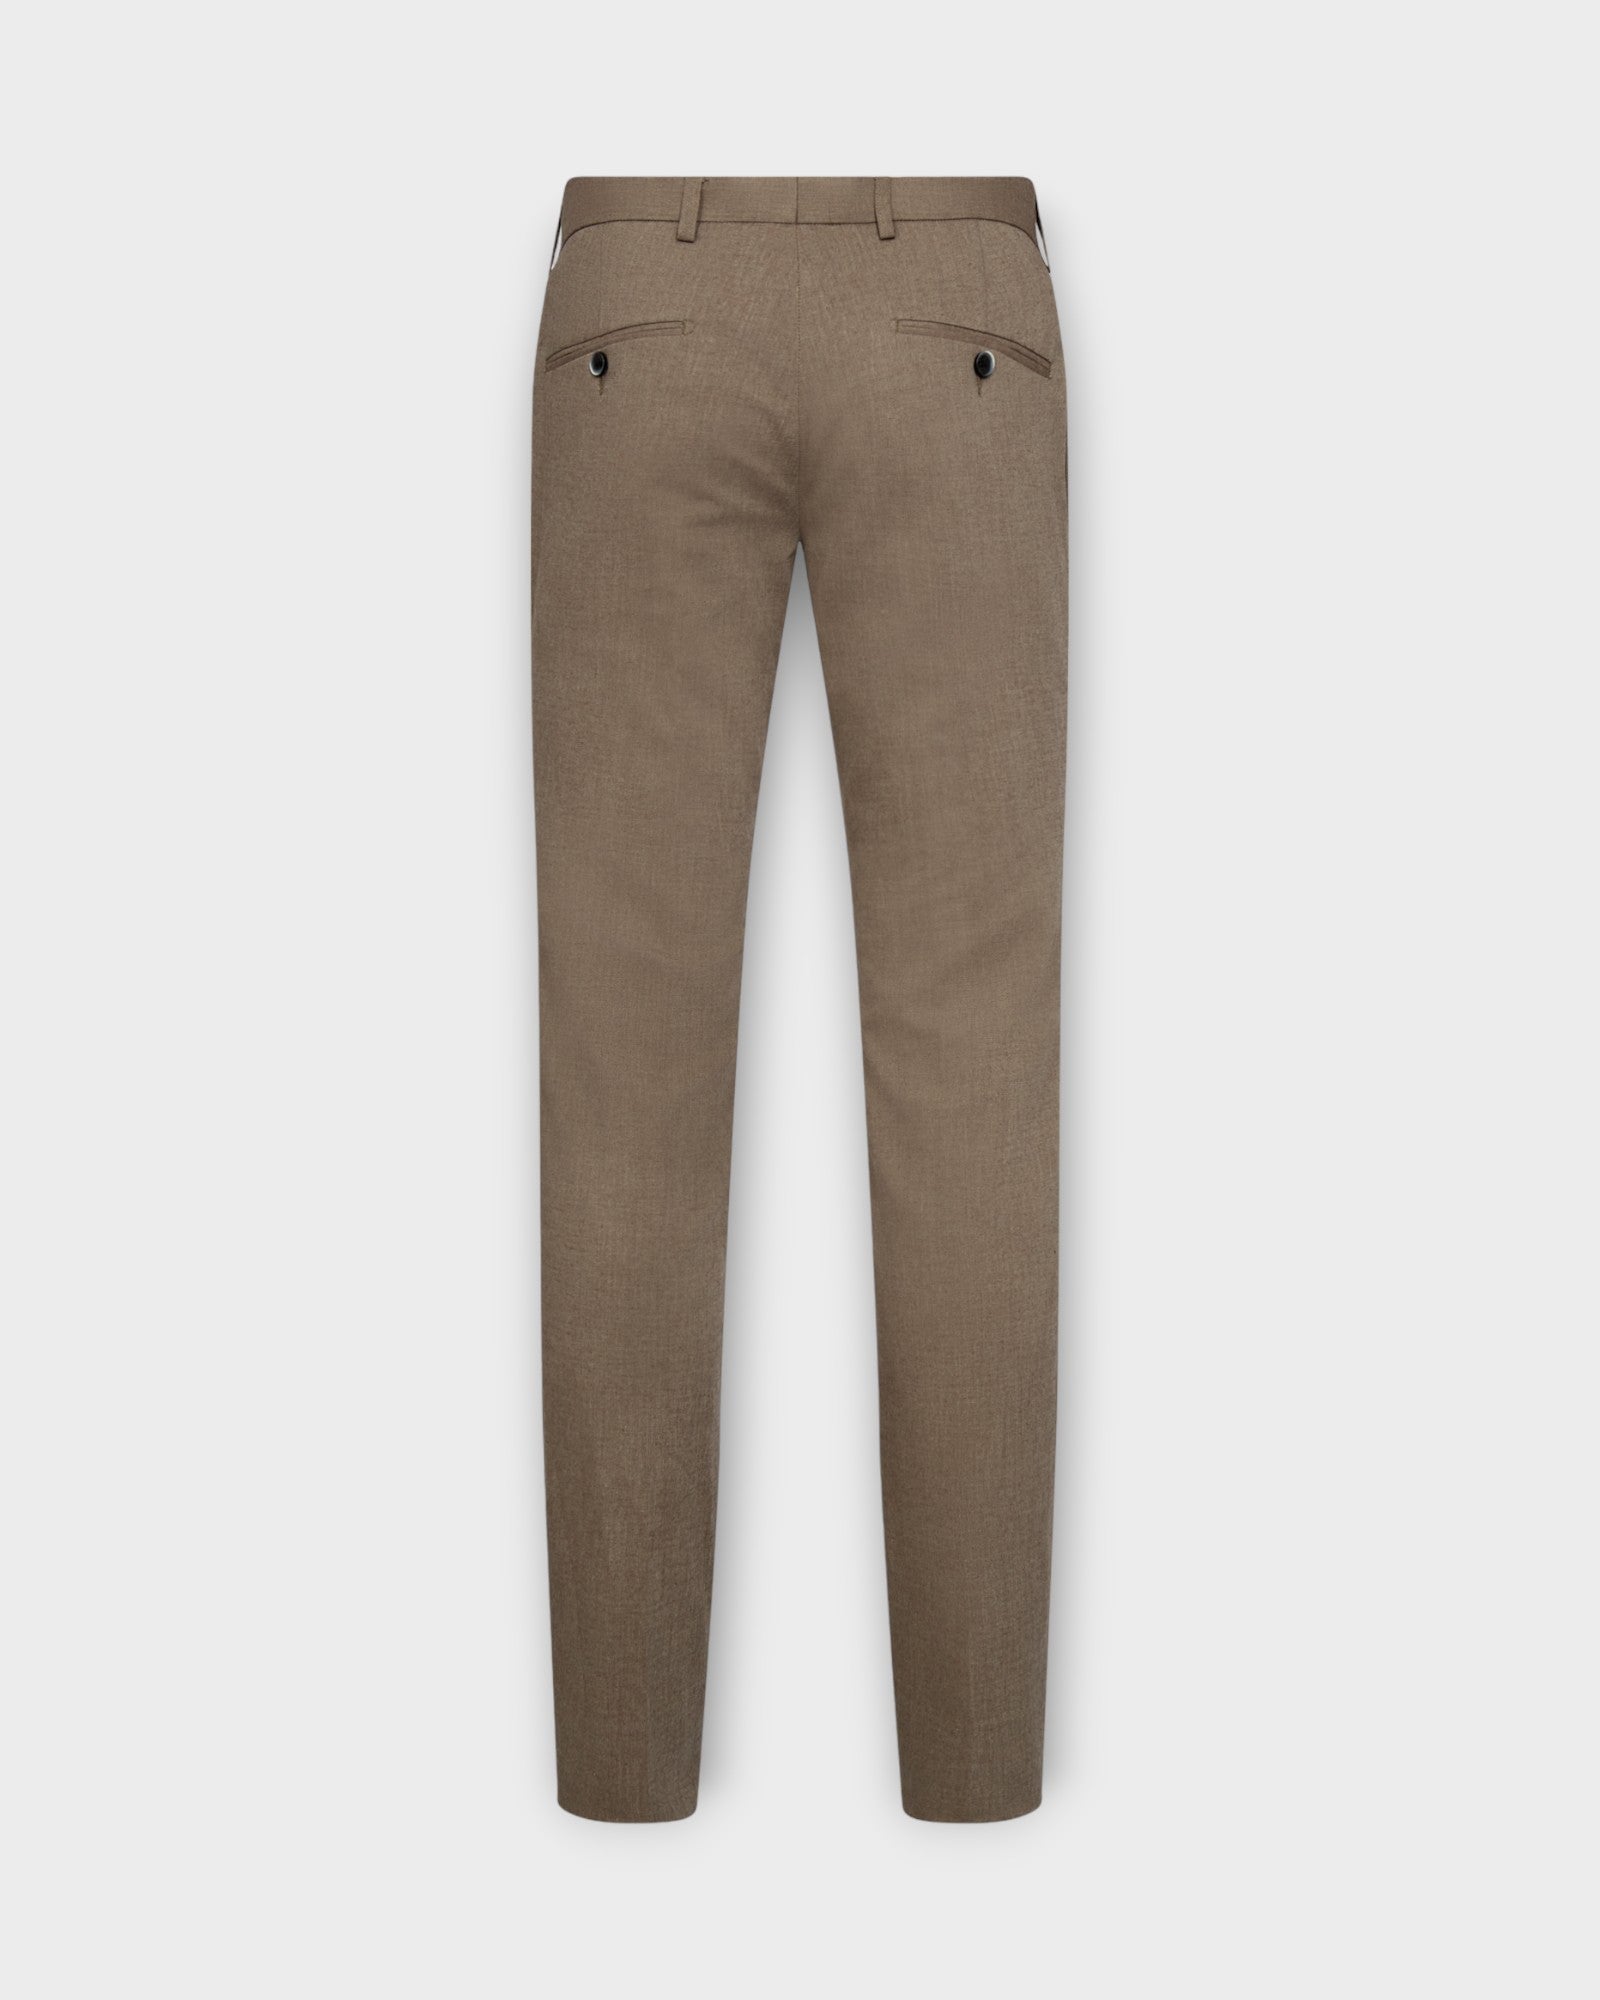 Pollino Classic Fit Suit Pants Brown, brune hørbukser til mænd fra Bruun og Stengade. Her set bagfra.